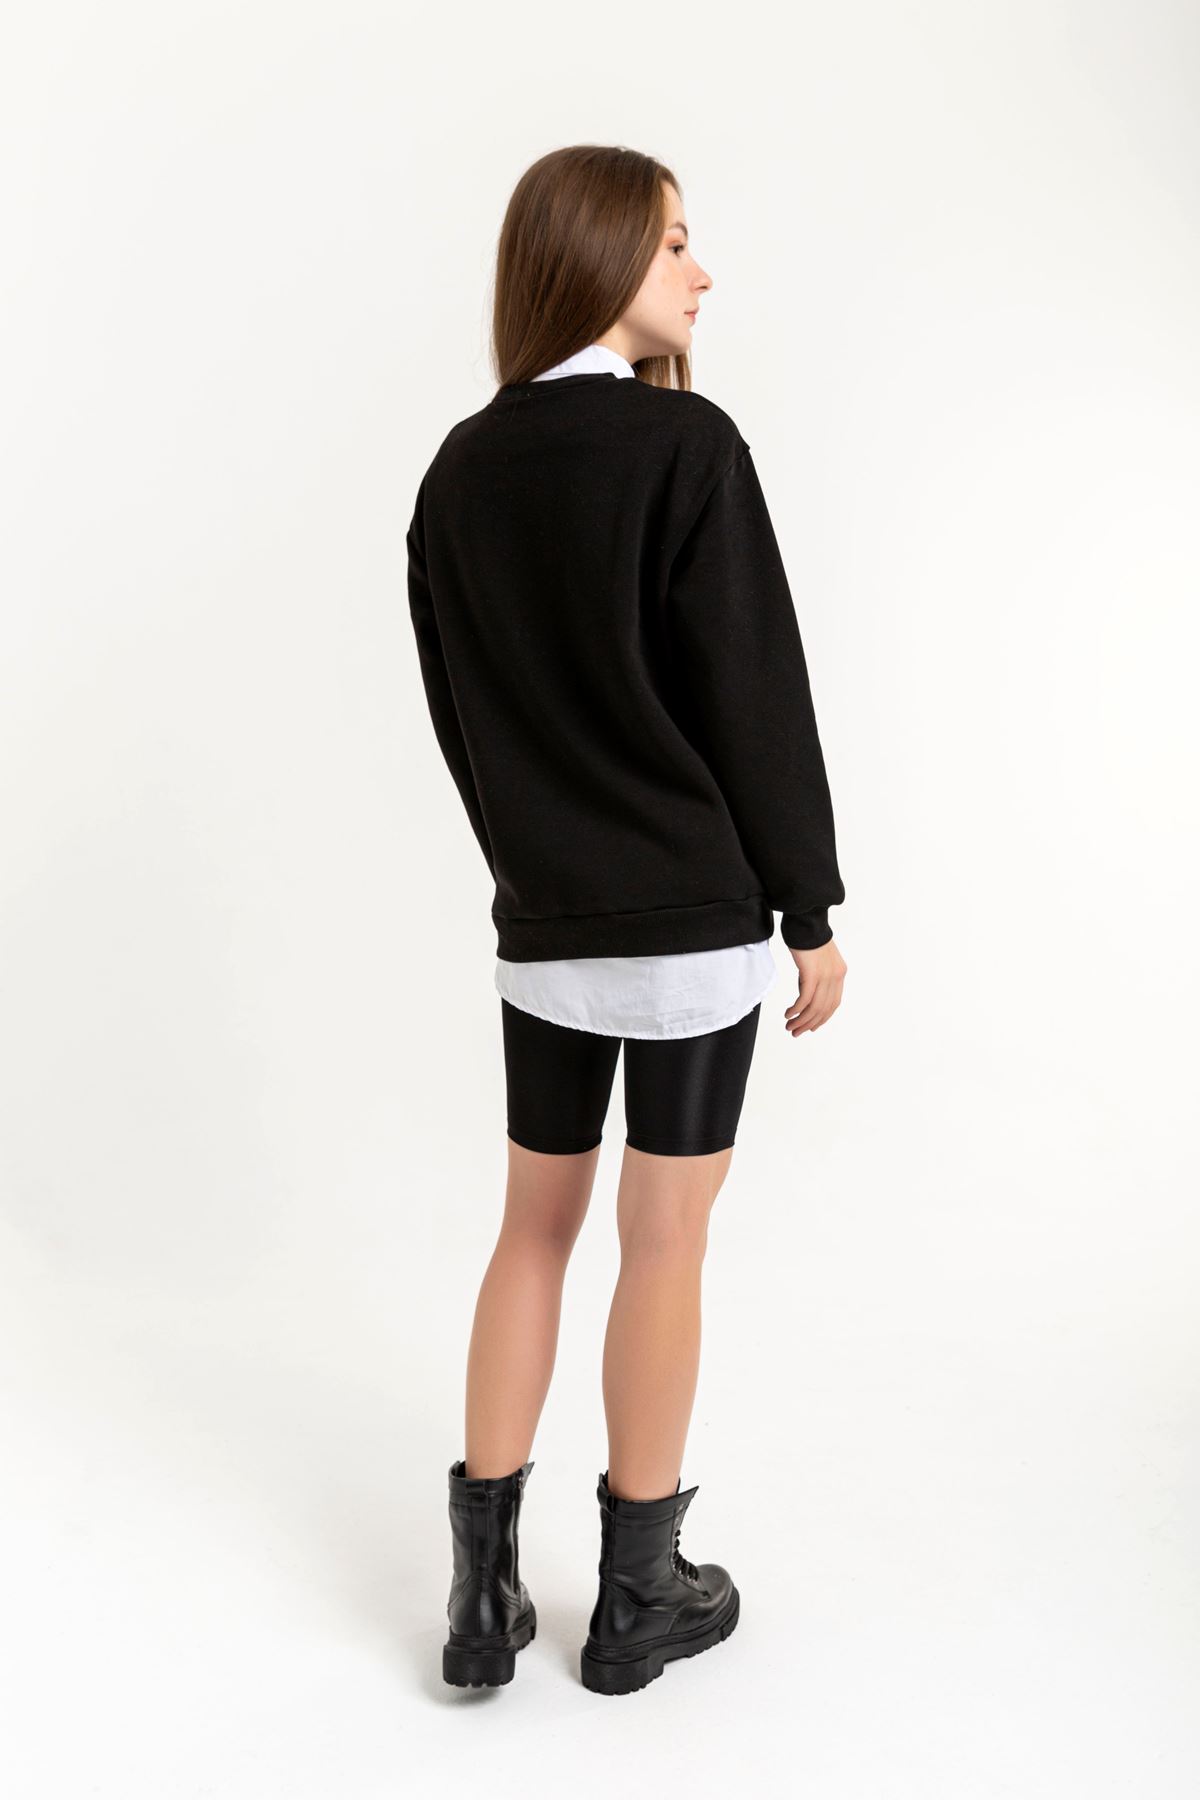 Şardonlu 3 İplik Kumaş Basen Boy Yazılı Kadın Sweatshirt-Siyah